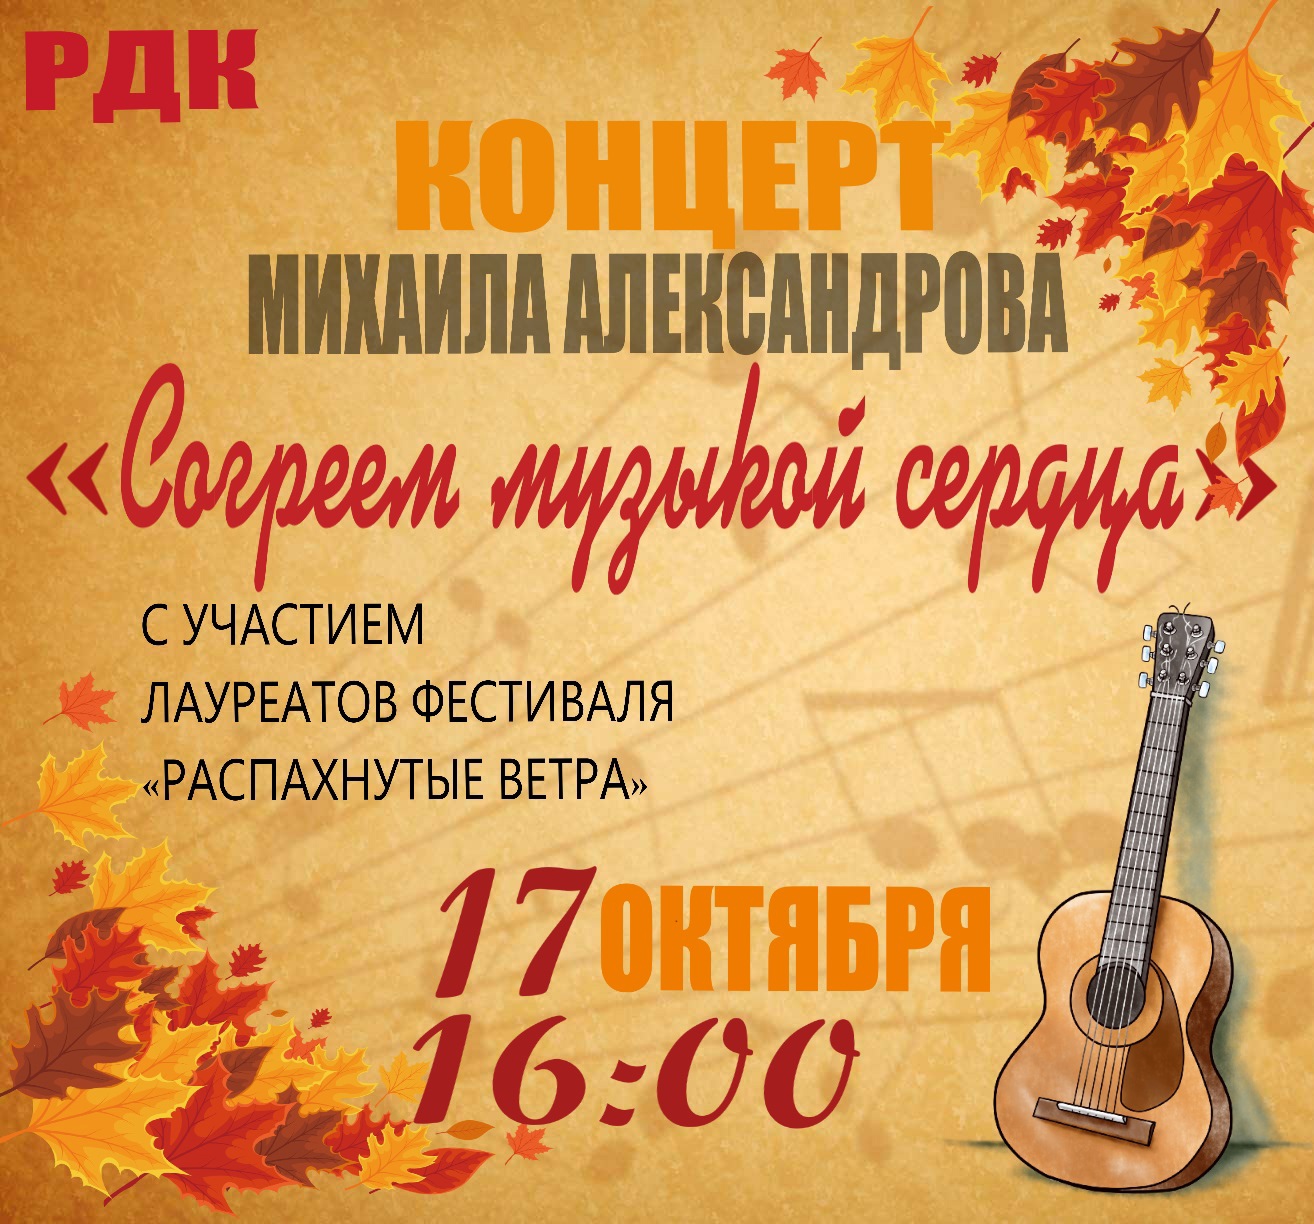 Концерт Михаила Александрова “Согреем музыкой сердца”